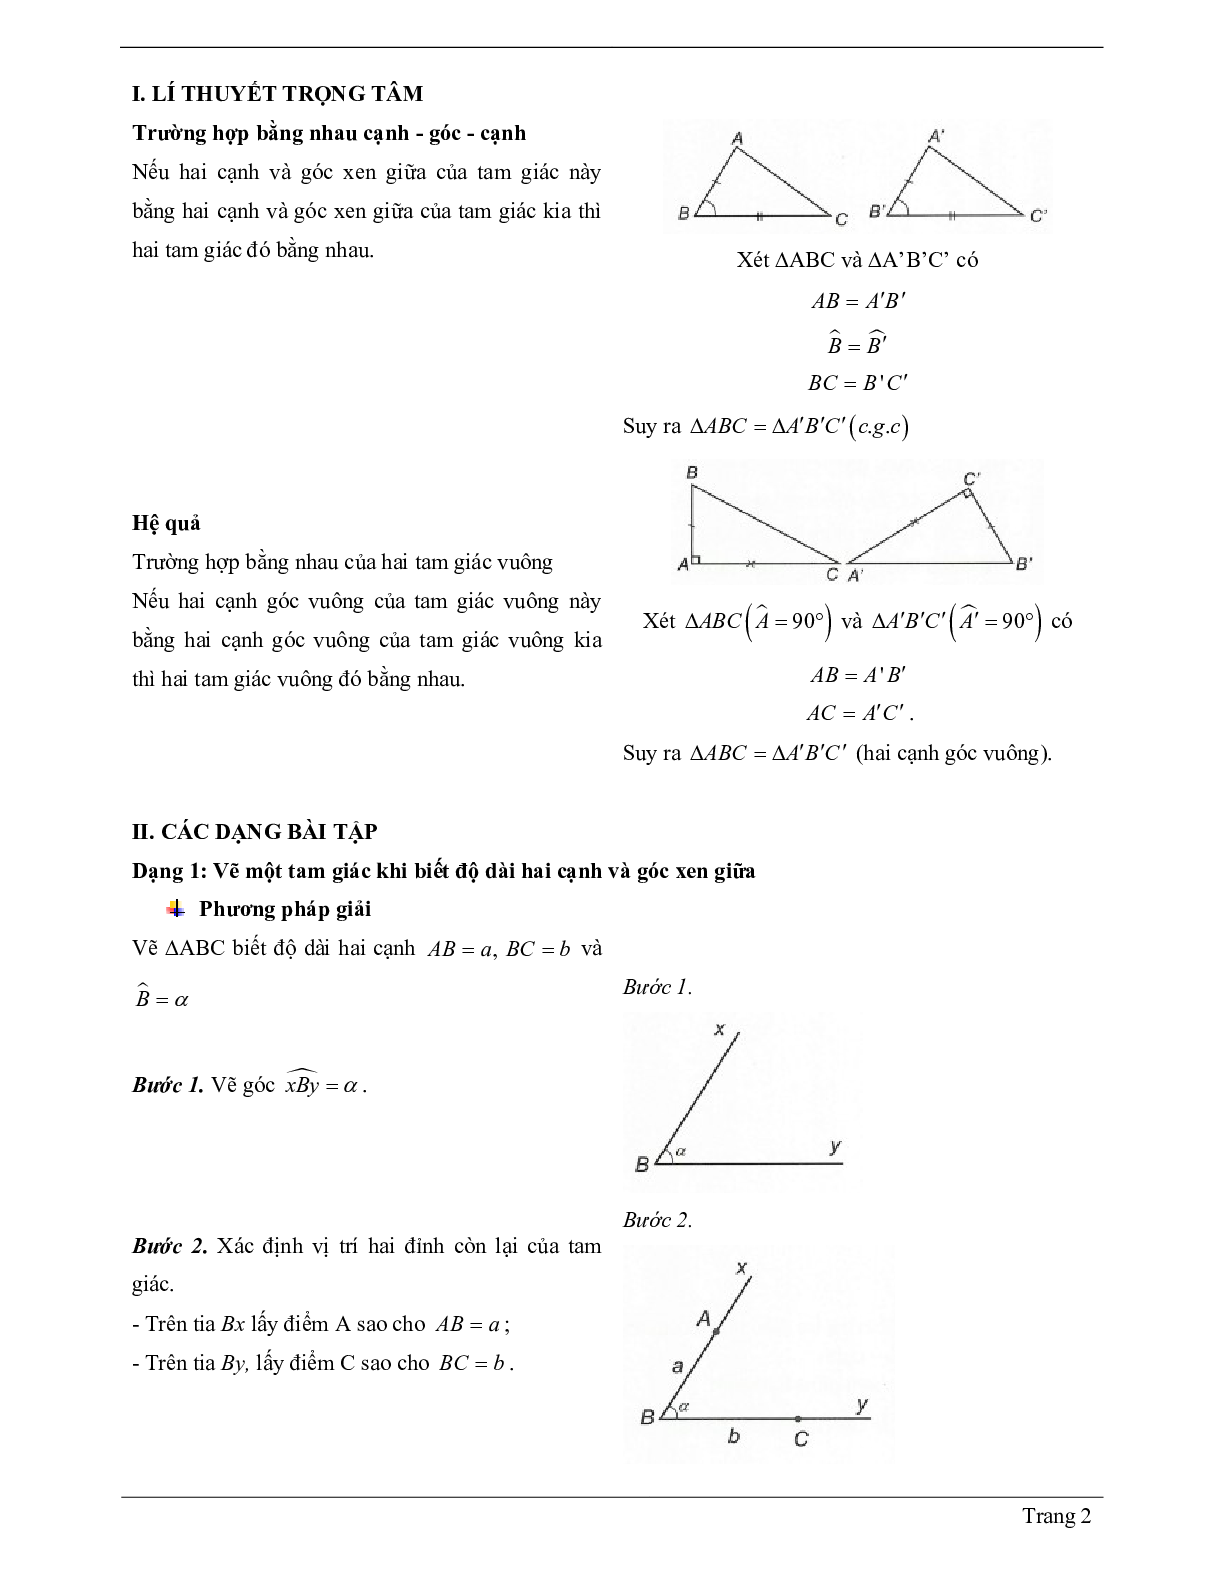 Lý thuyết Toán lớp 7 có đáp án: Trường hợp bằng nhau thứ hai của tam giác: cạnh - góc - cạnh (c.g.c) (trang 2)